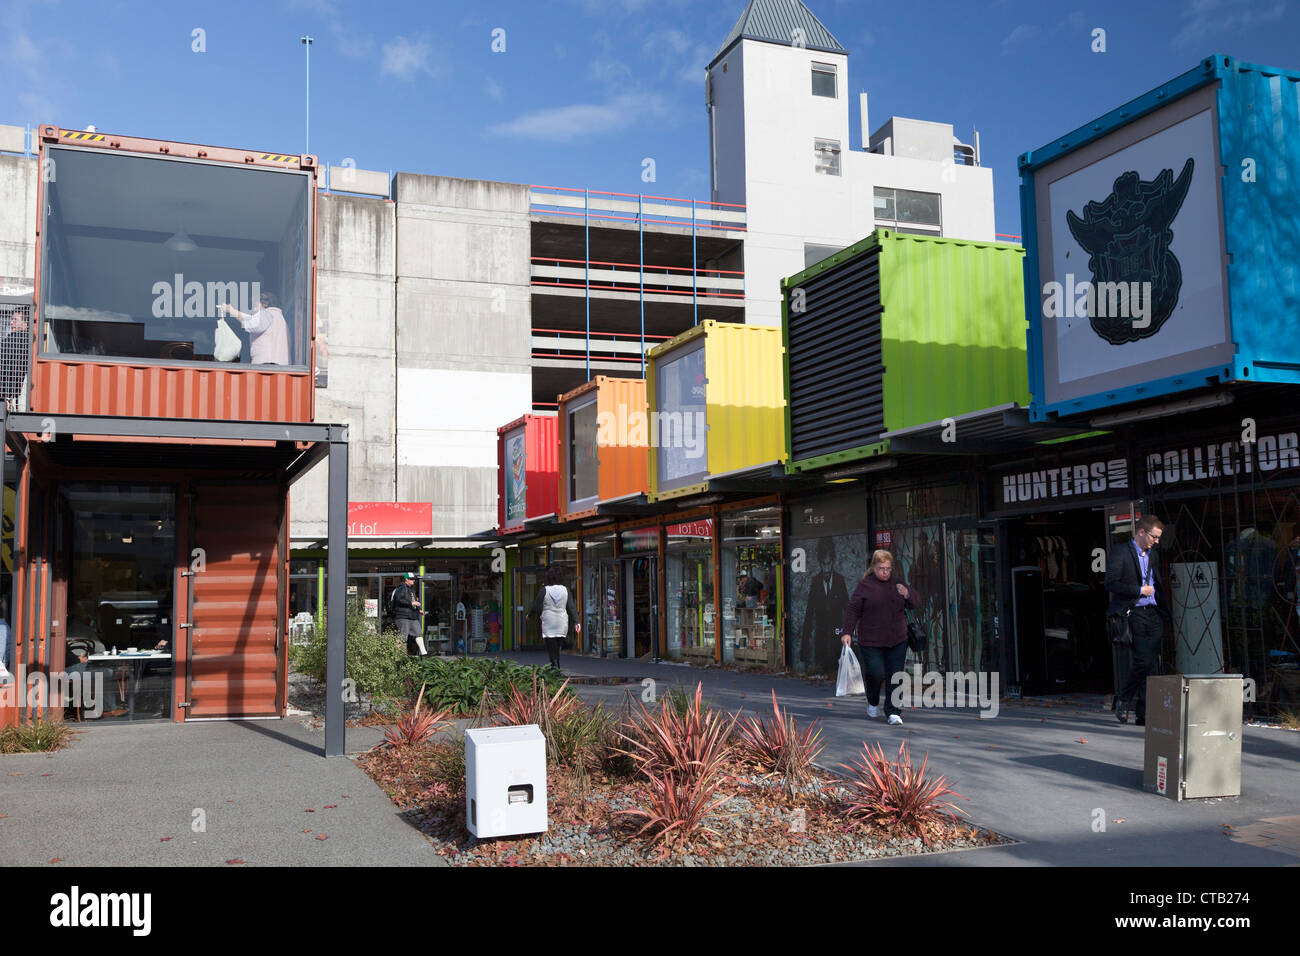 Nach dem Erdbeben Christchurch, Neuseeland - innovative Container sofort Einkaufszentrum City 2 Stockfoto